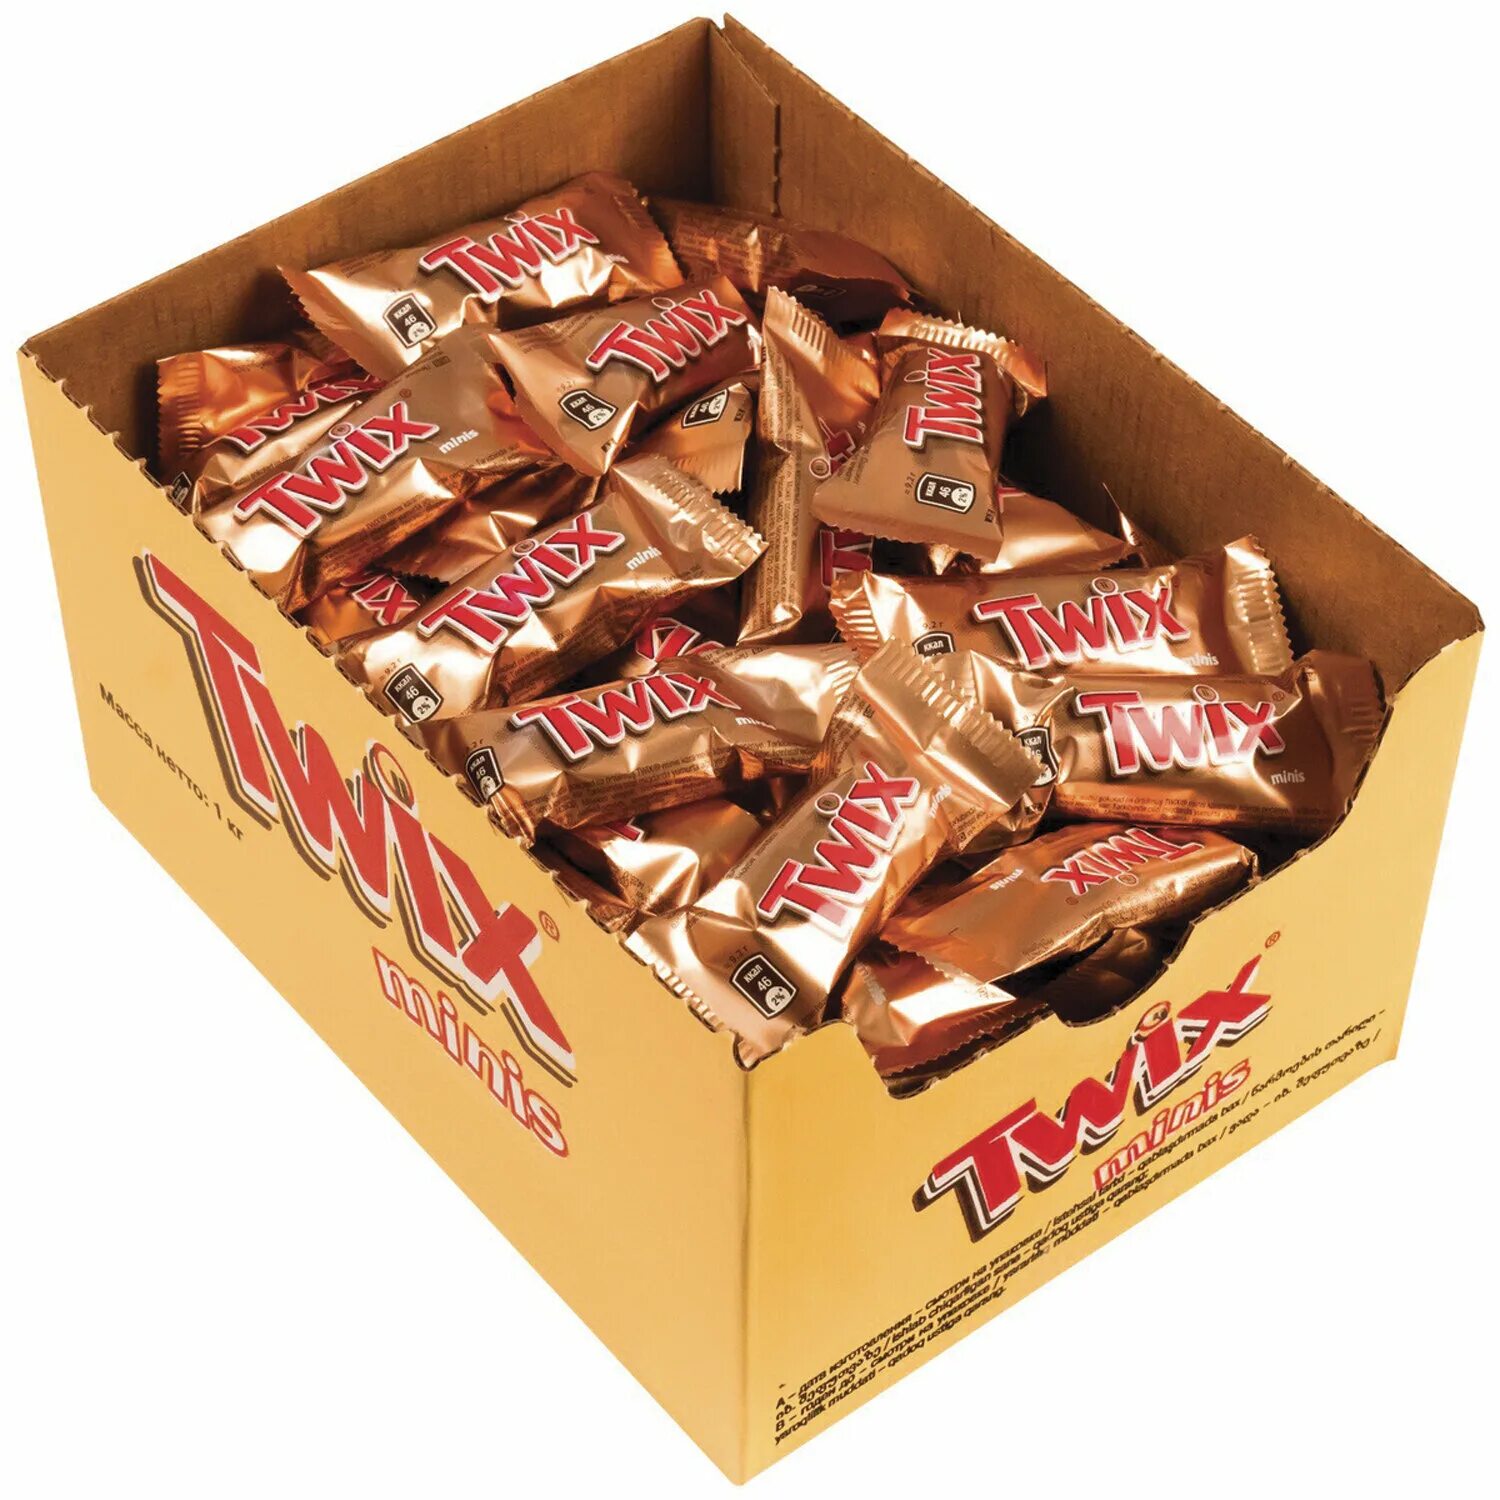 Купить конфеты мини. Шоколадные конфеты Twix Minis (1 кг). Конфеты Твикс Минис 1 кг. Твикс весовые 2.7. Твикс Минис коробка.